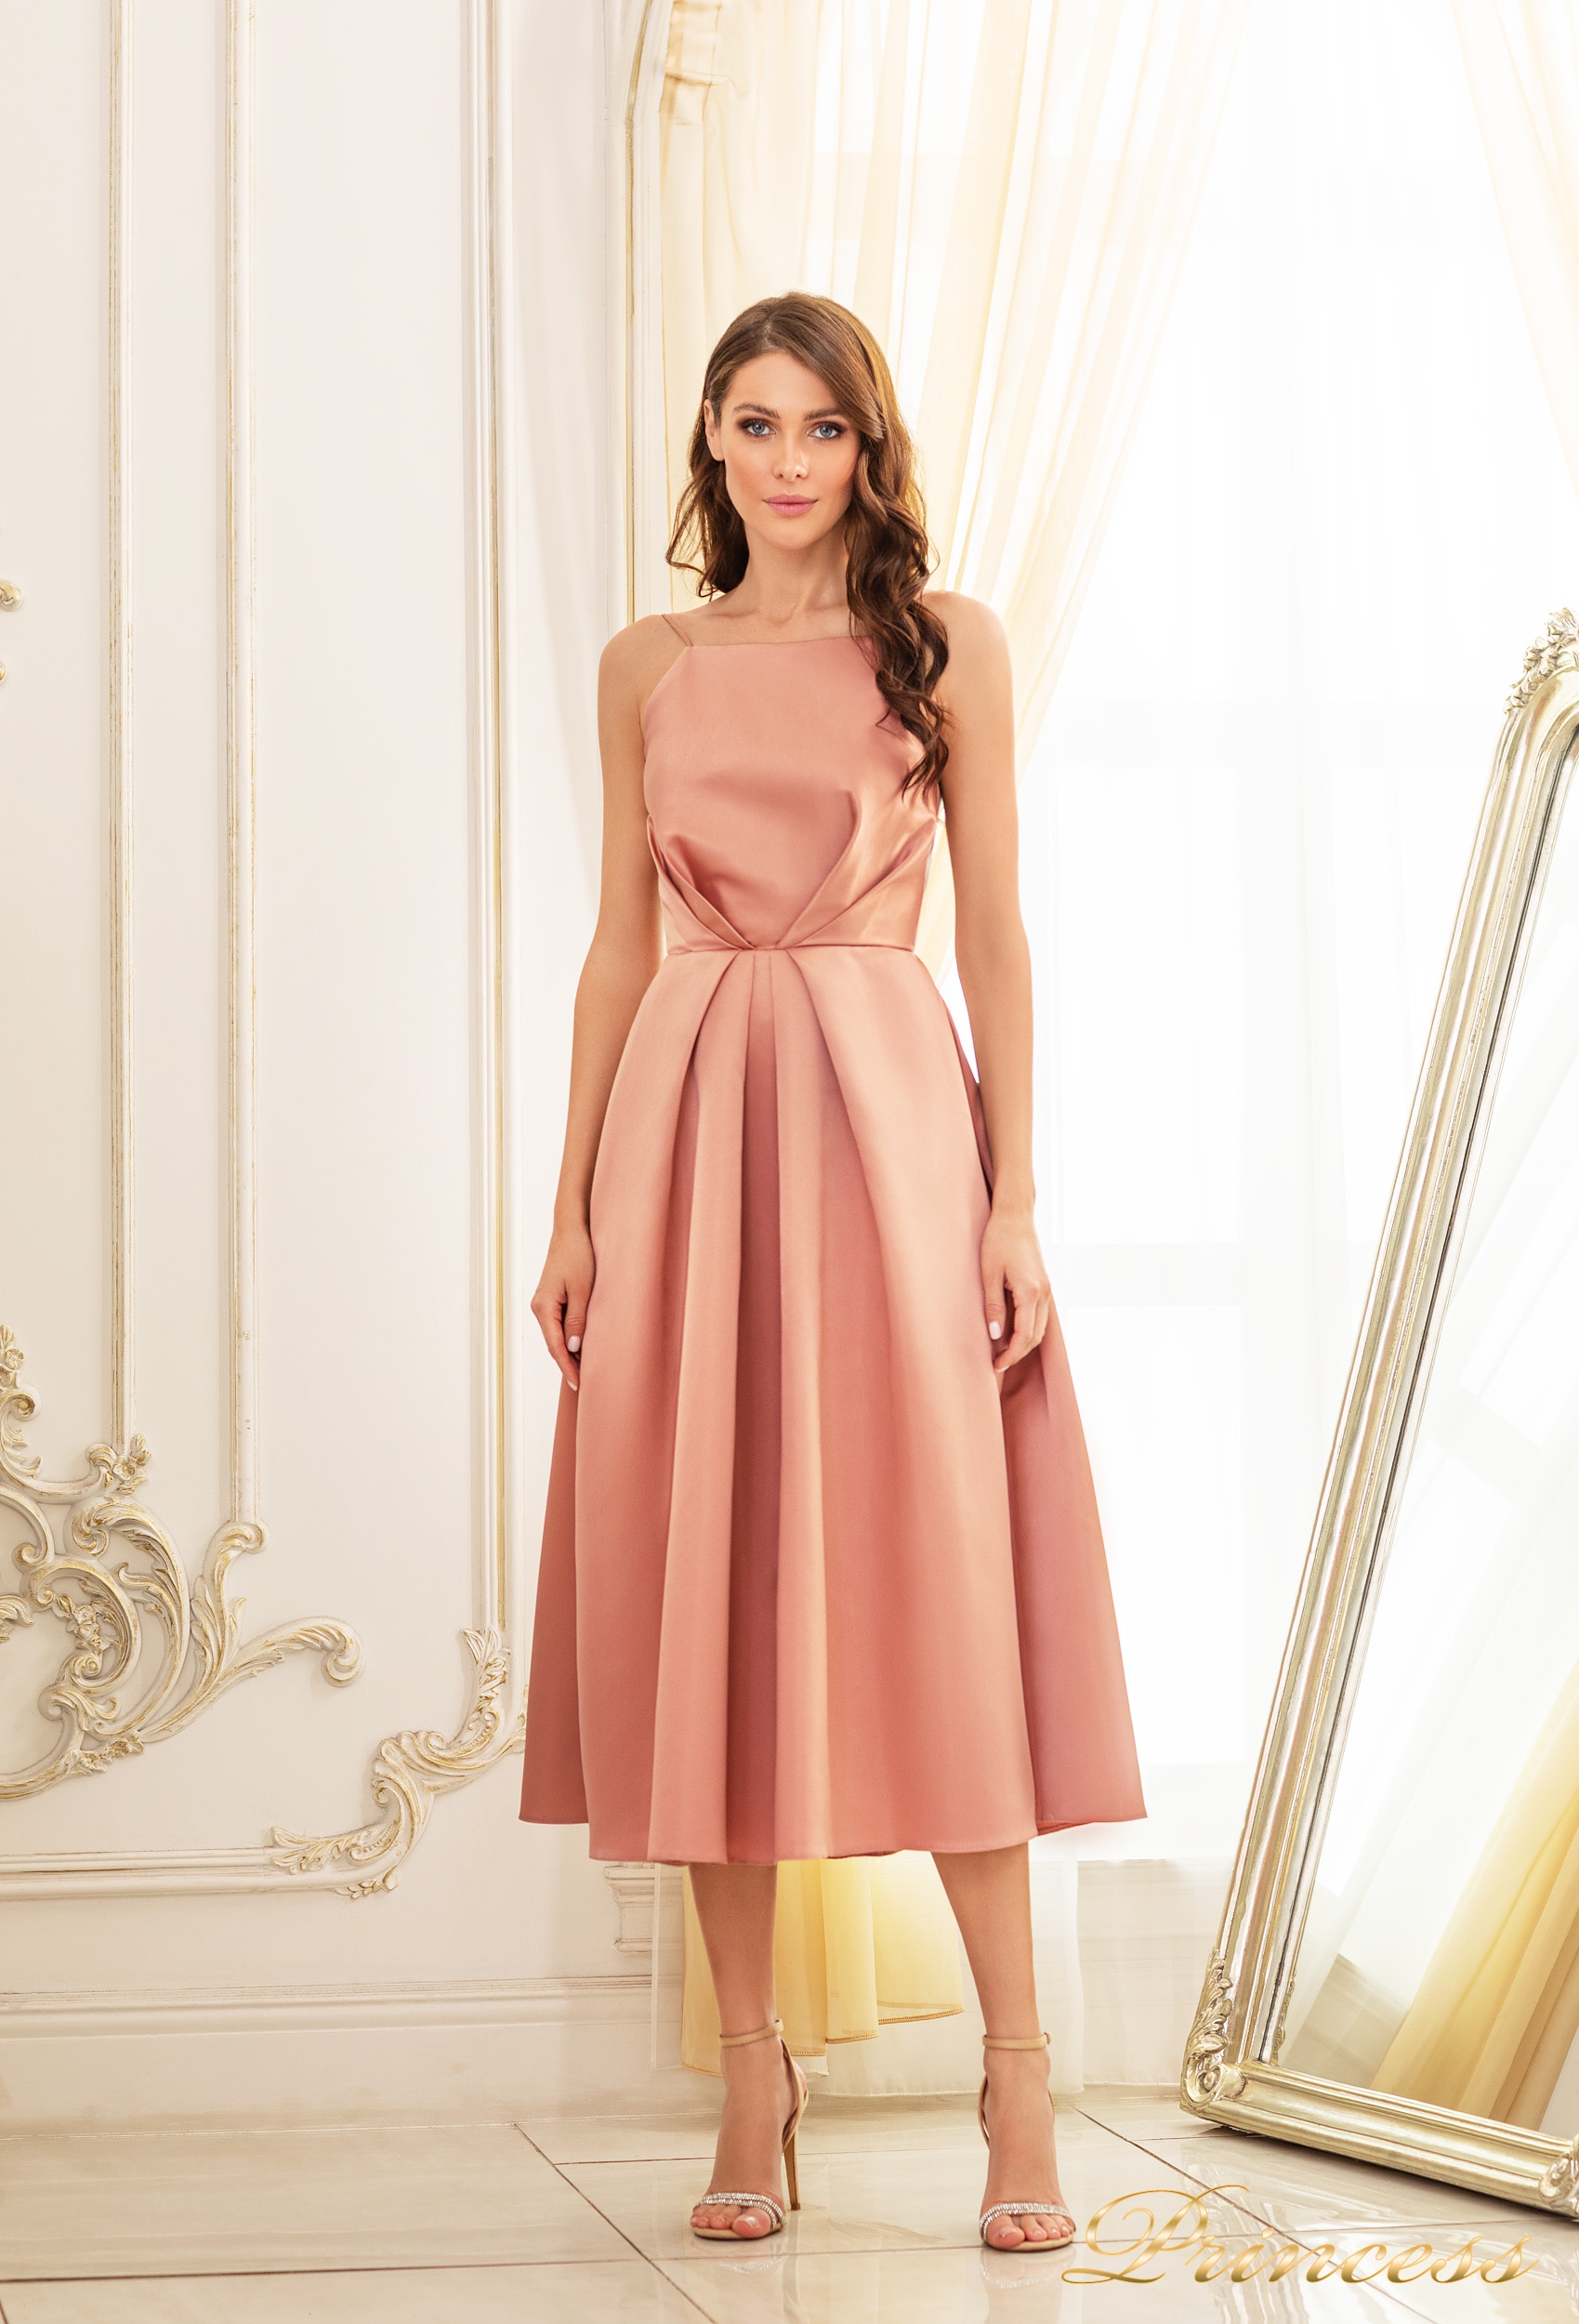 Купить вечернее платье 19048-cappuccino бежевого цвета по цене 24500 руб. в Москве в интернет-магазине Принцесса